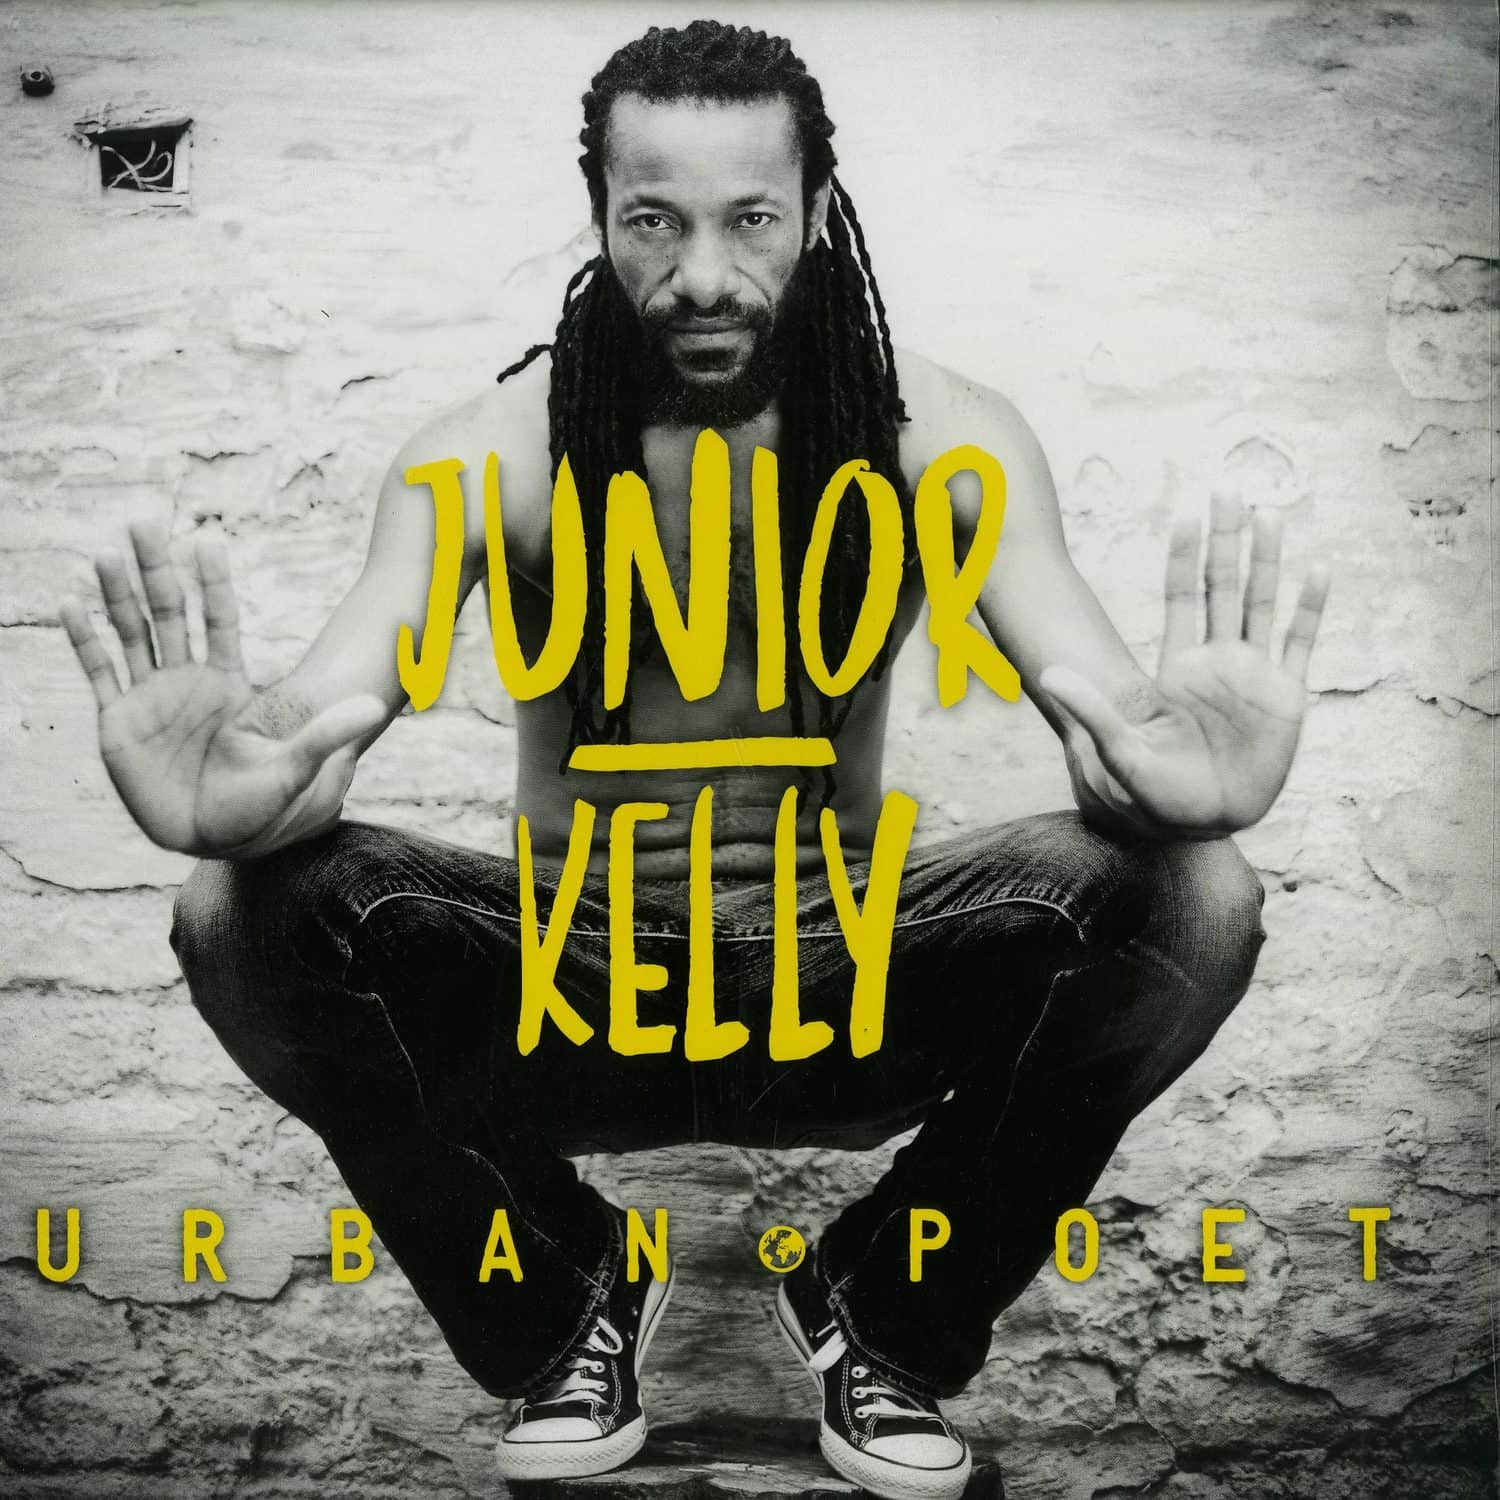 Junior Kelly - URBAN POET 